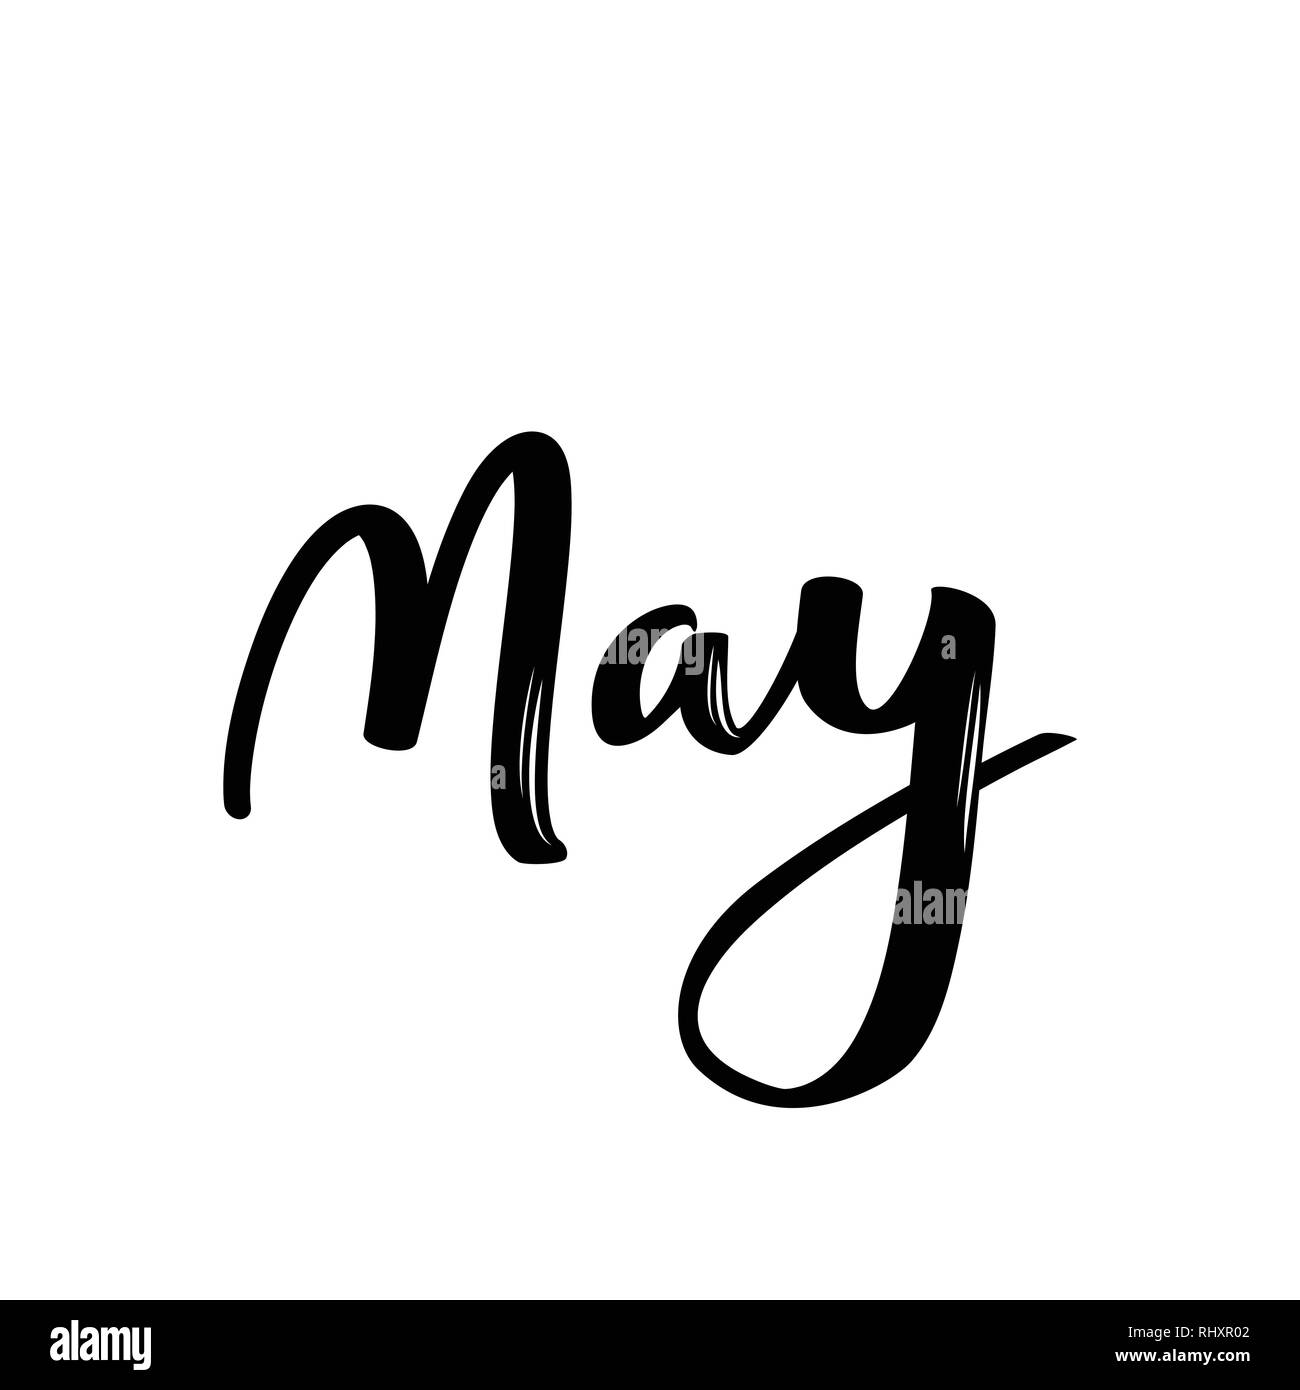 Le mois de mai dessin Banque d'images noir et blanc - Alamy